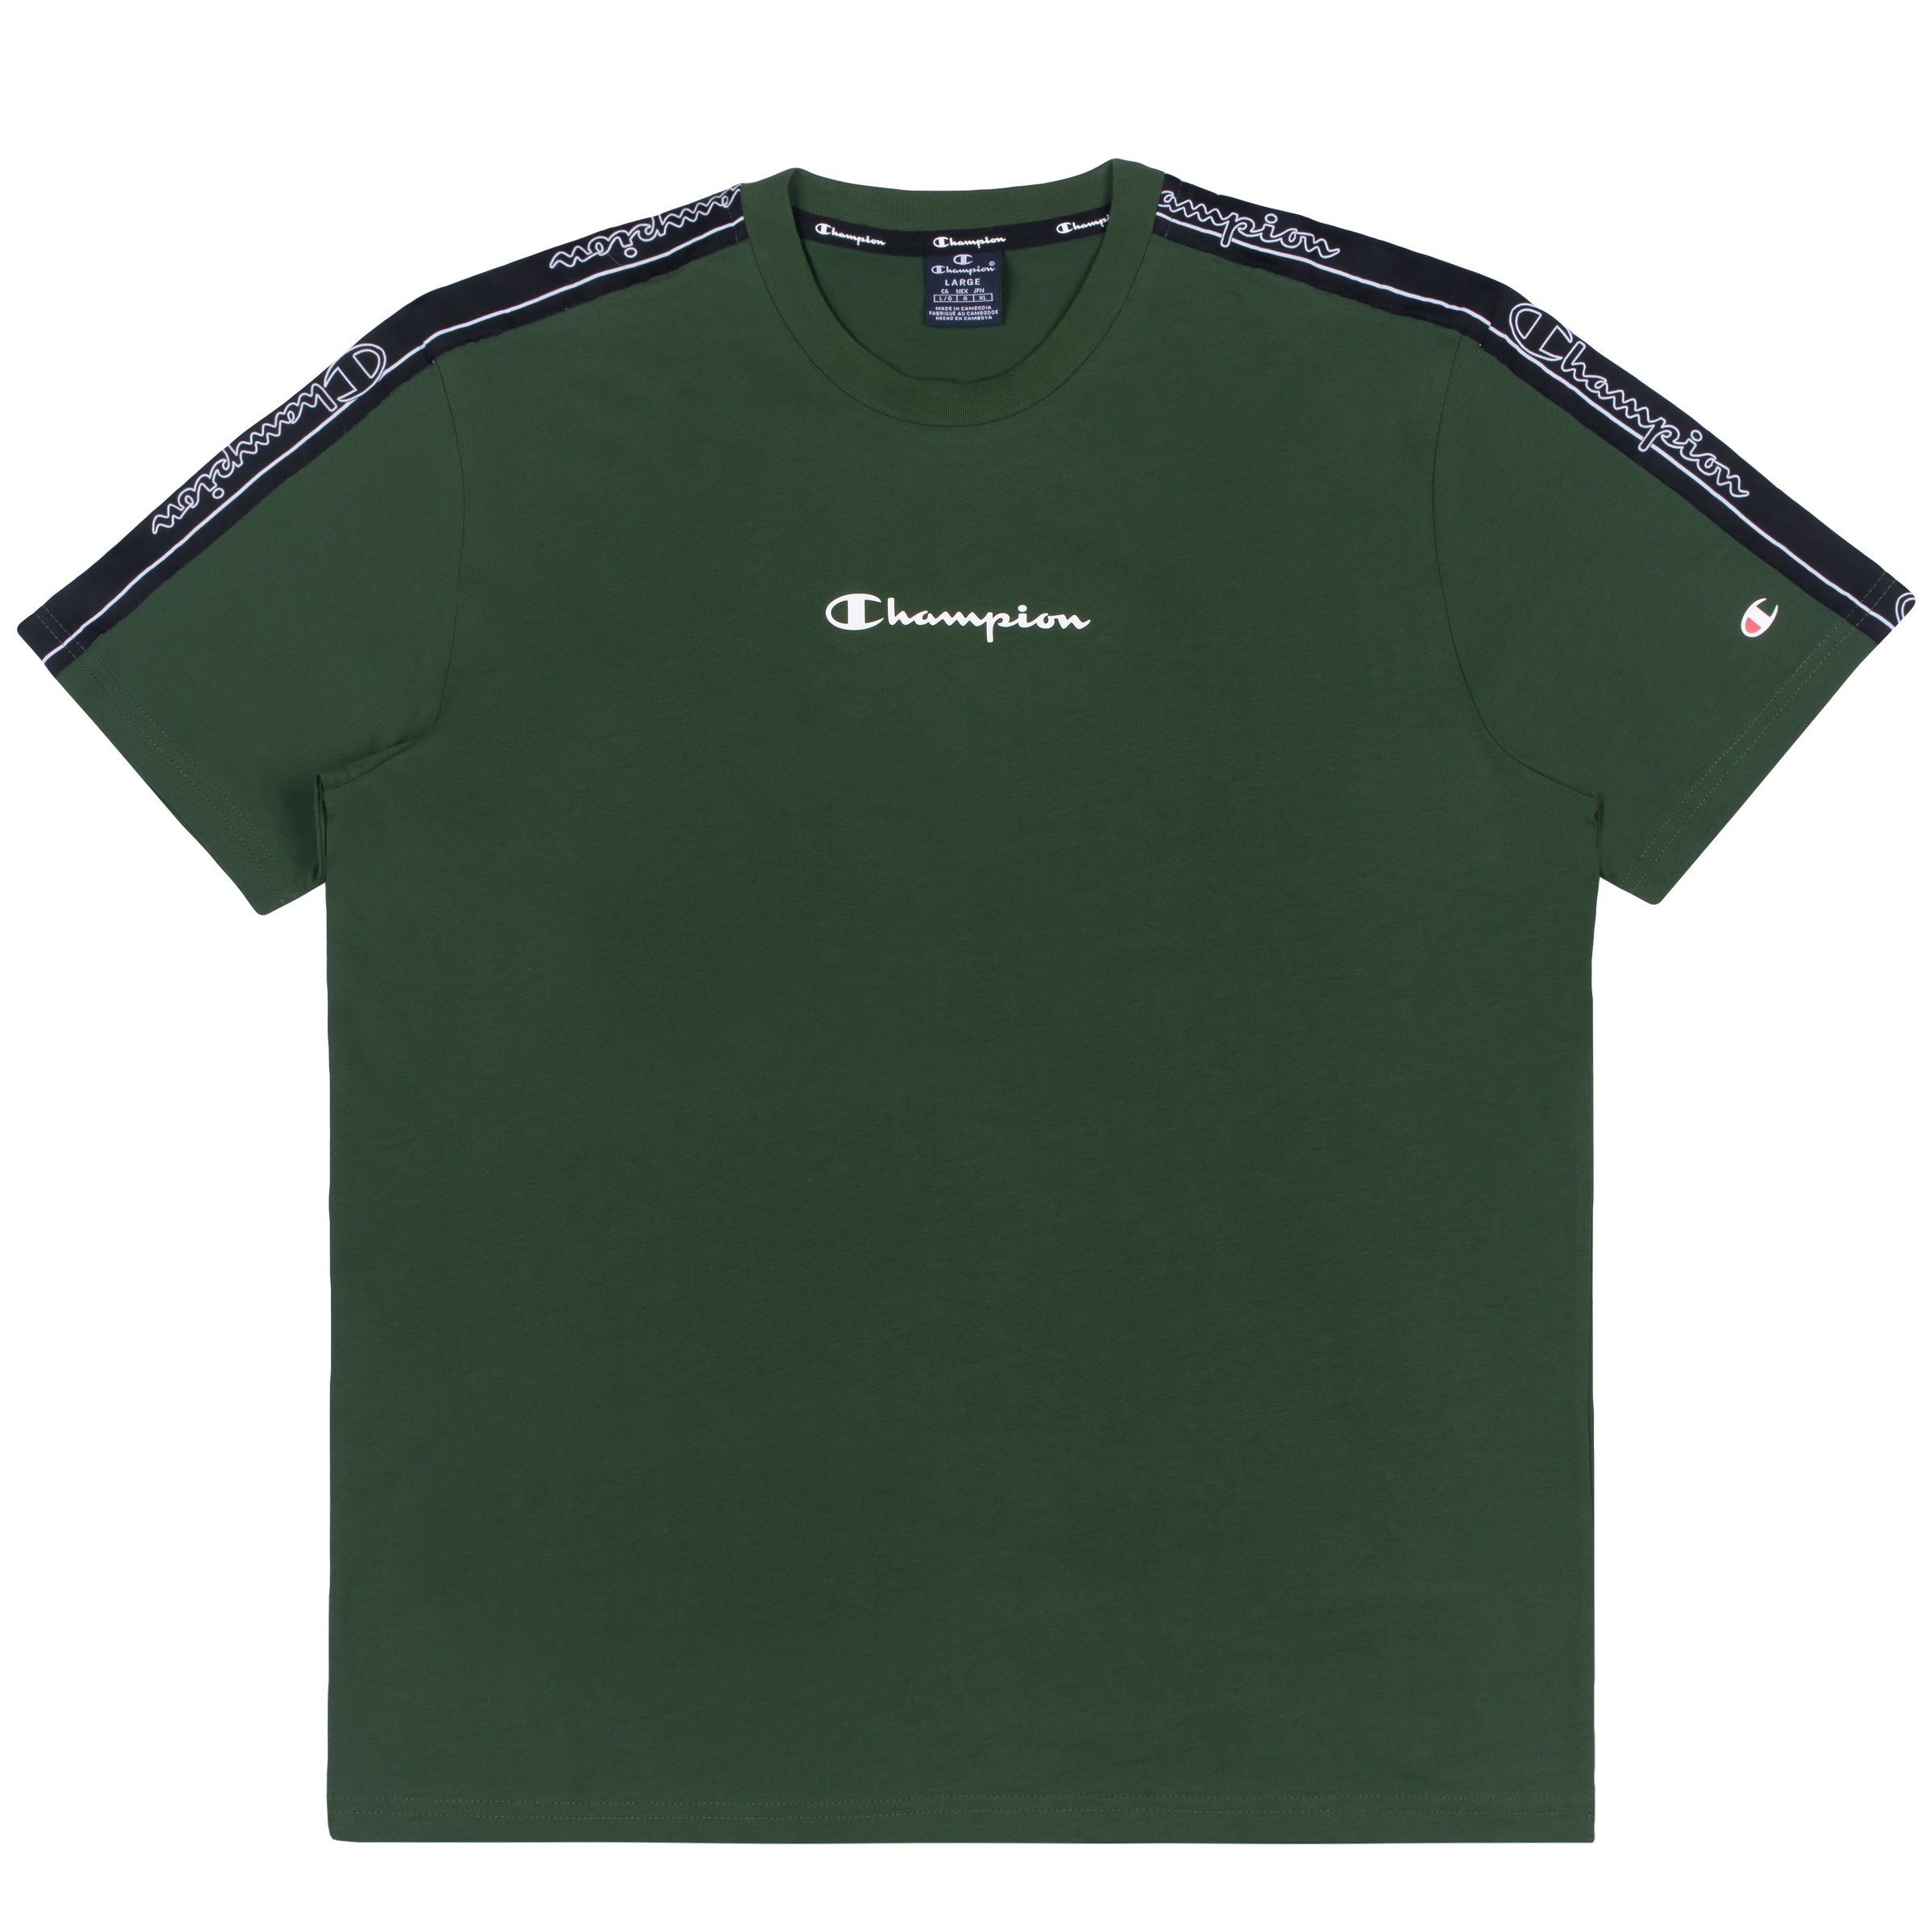 T-Shirt T-Shirt Champion grün Crewneck T-Shirt Herren Adult 215315 (gnps) Champion